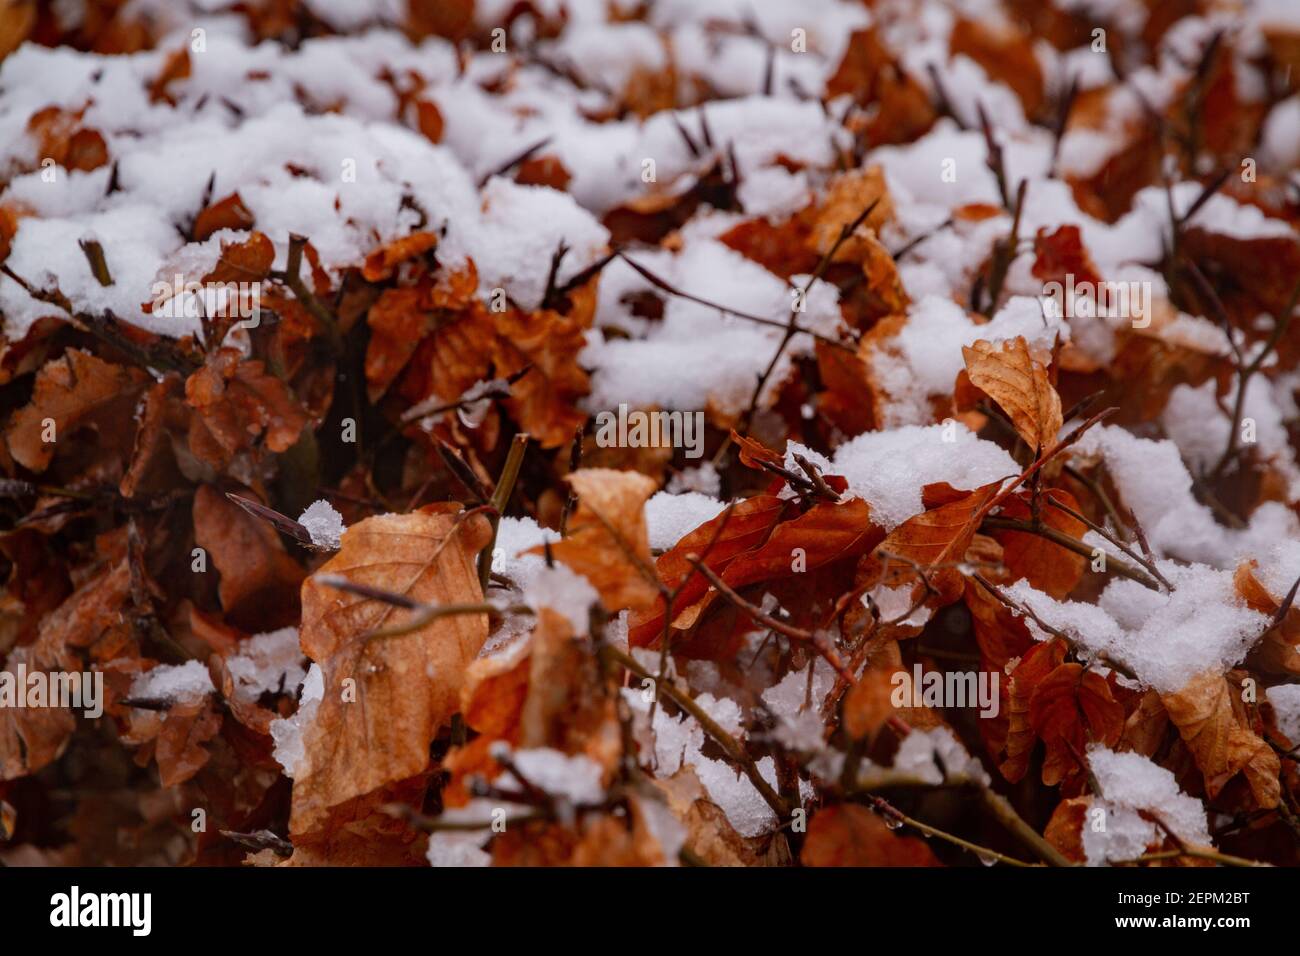 Detalle de algunas hojas marrones cubiertas de nieve Foto de stock